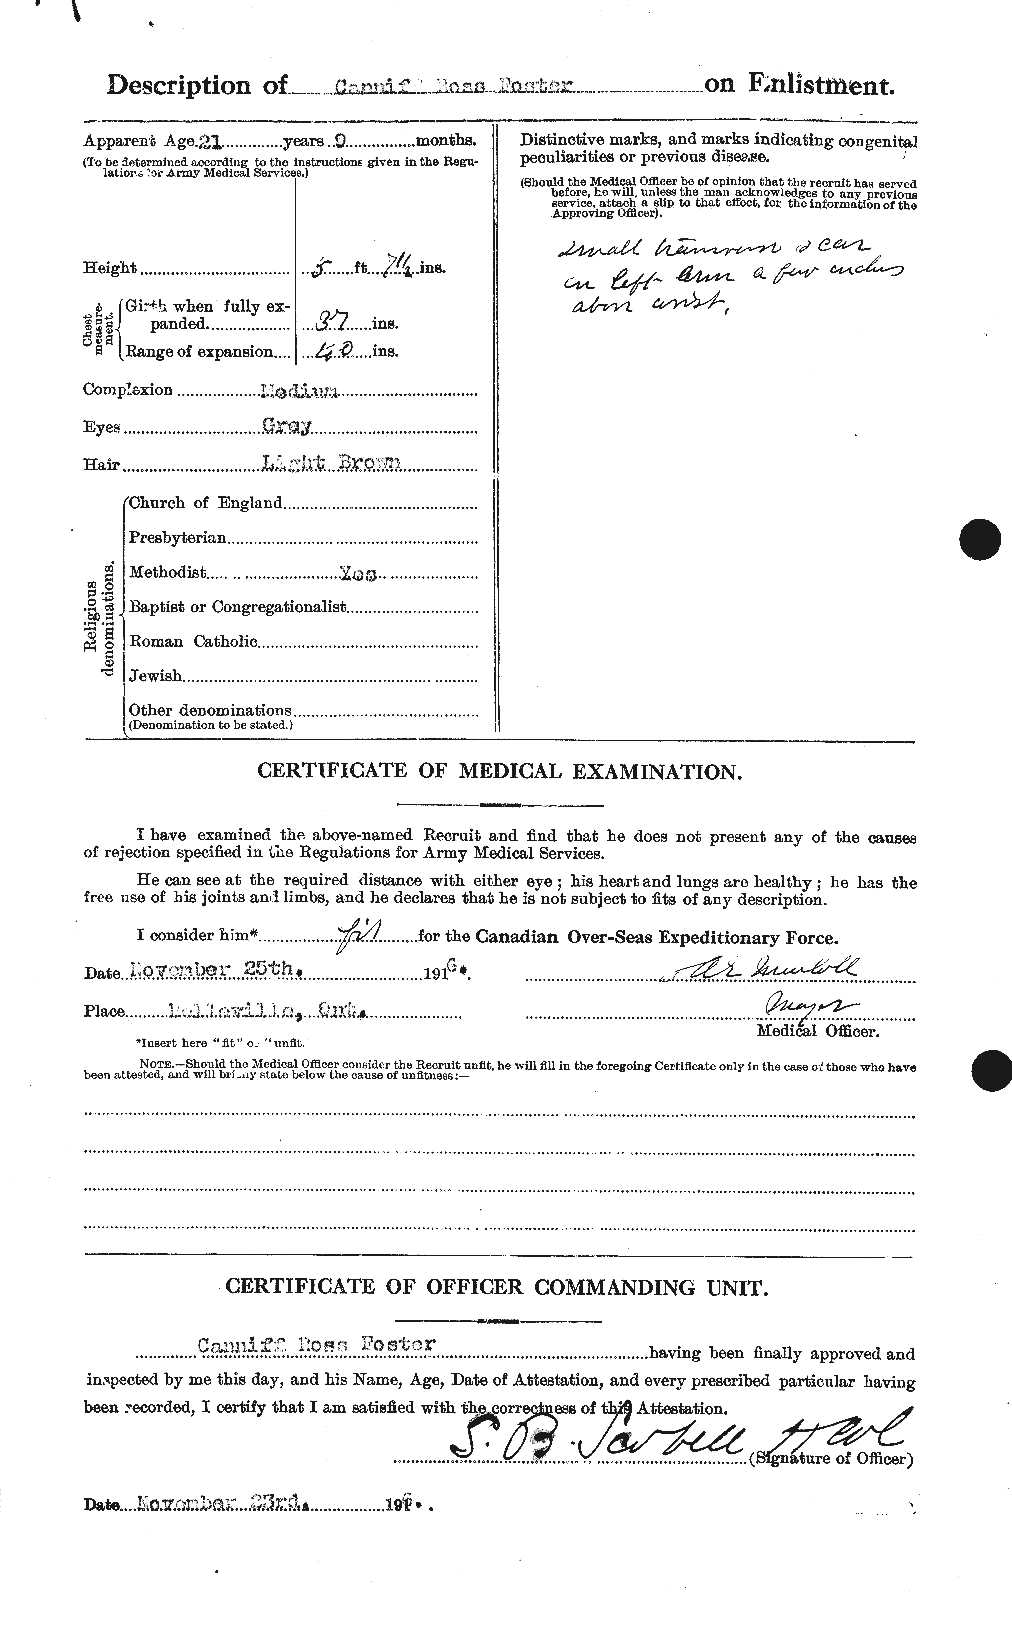 Dossiers du Personnel de la Première Guerre mondiale - CEC 330495b